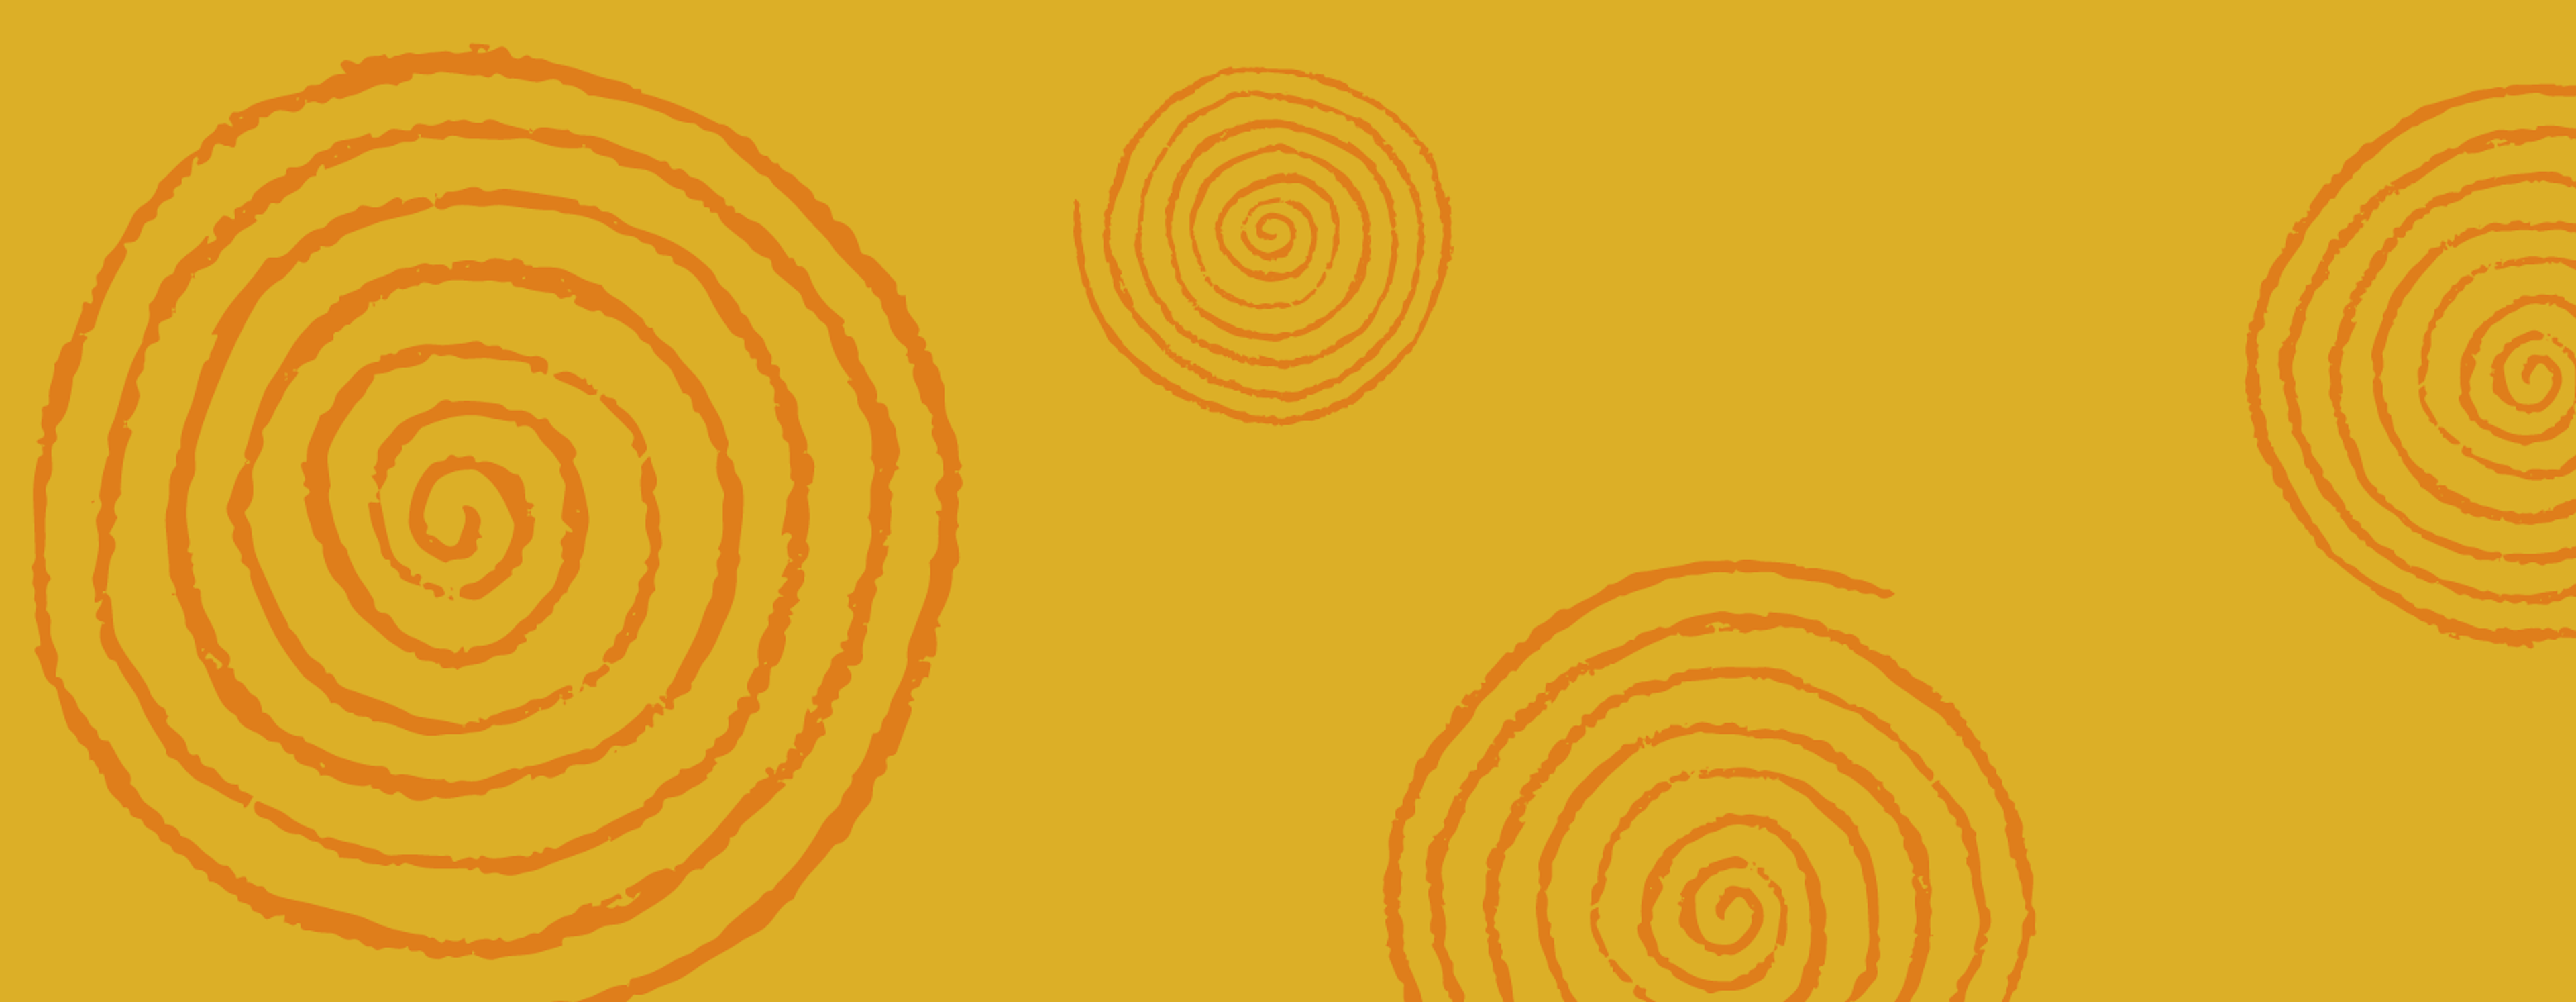 Spiral of Healing Yellow Background With Orange Spirals